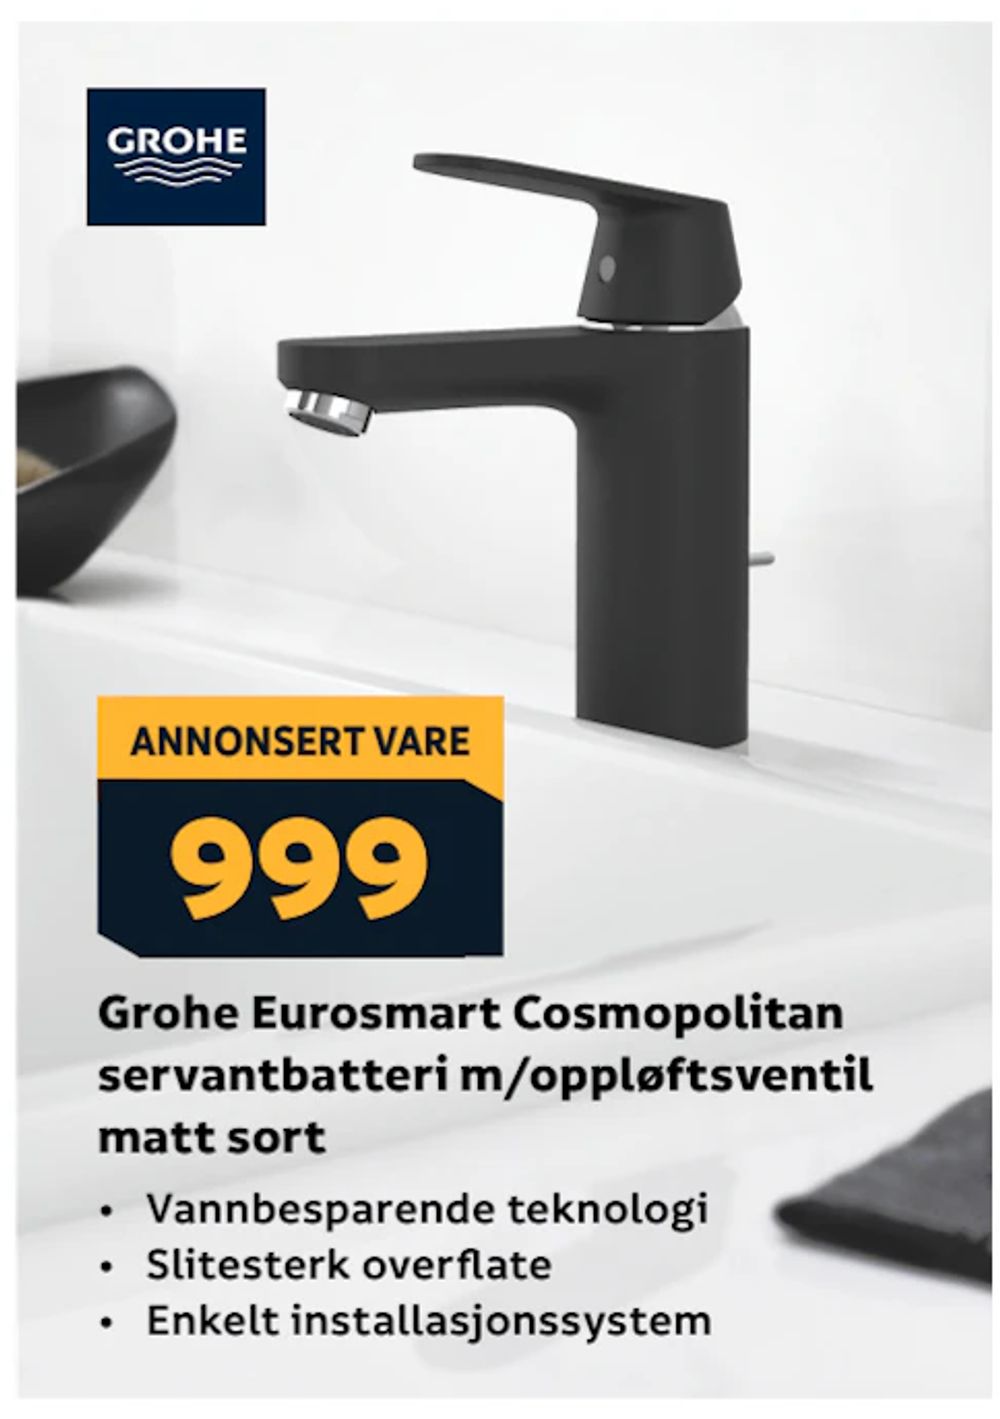 Tilbud på Grohe Eurosmart Cosmopolitan servantbatteri m/oppløftsventil matt sort fra Megaflis til 999 kr